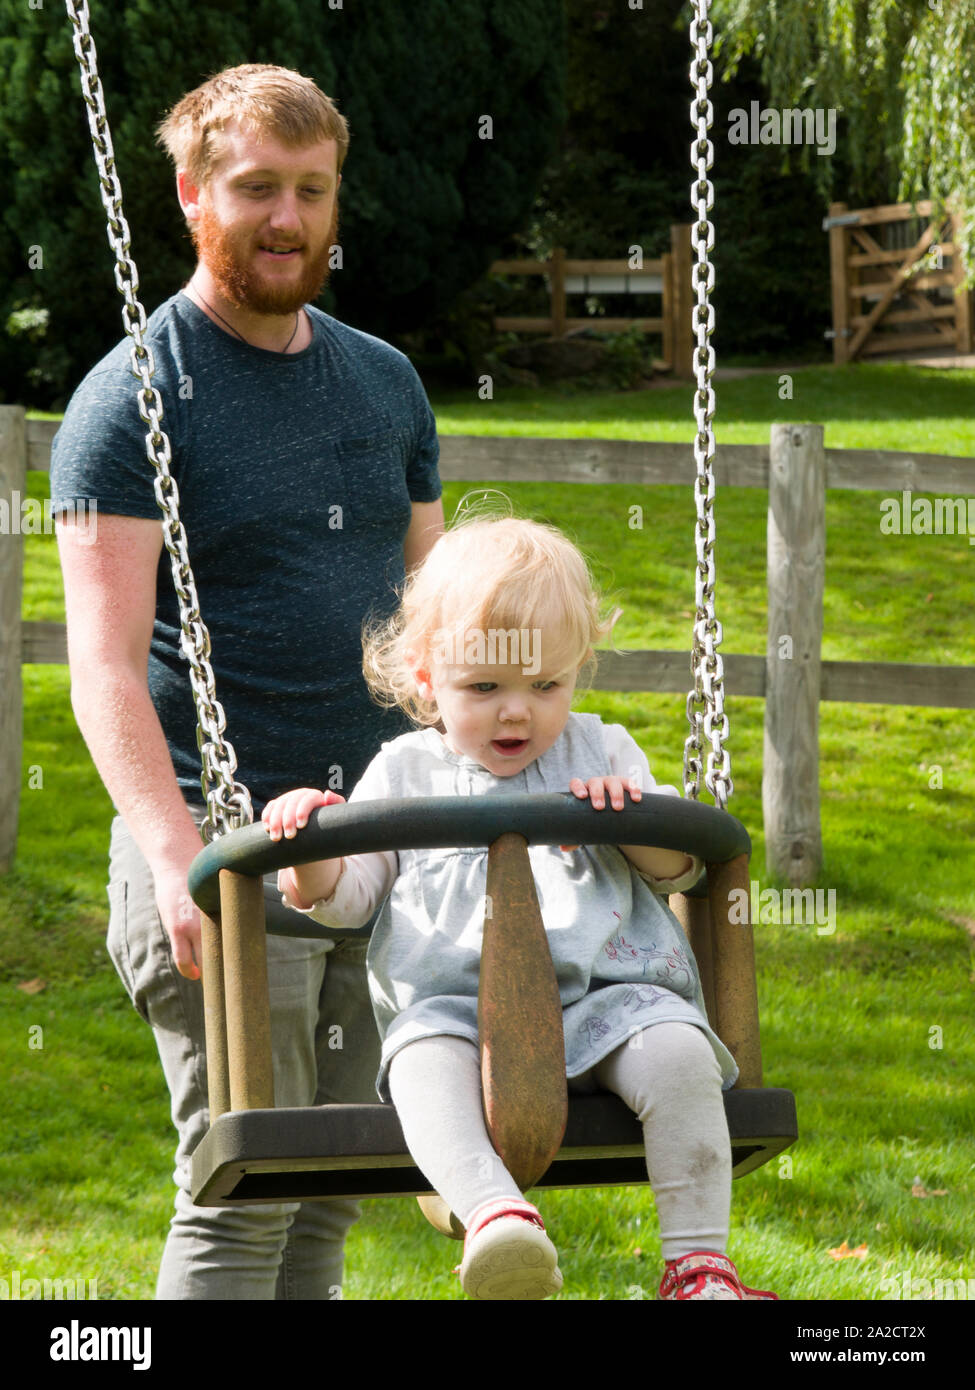 Dad pushing toddler on a swing, UK Stock Photo